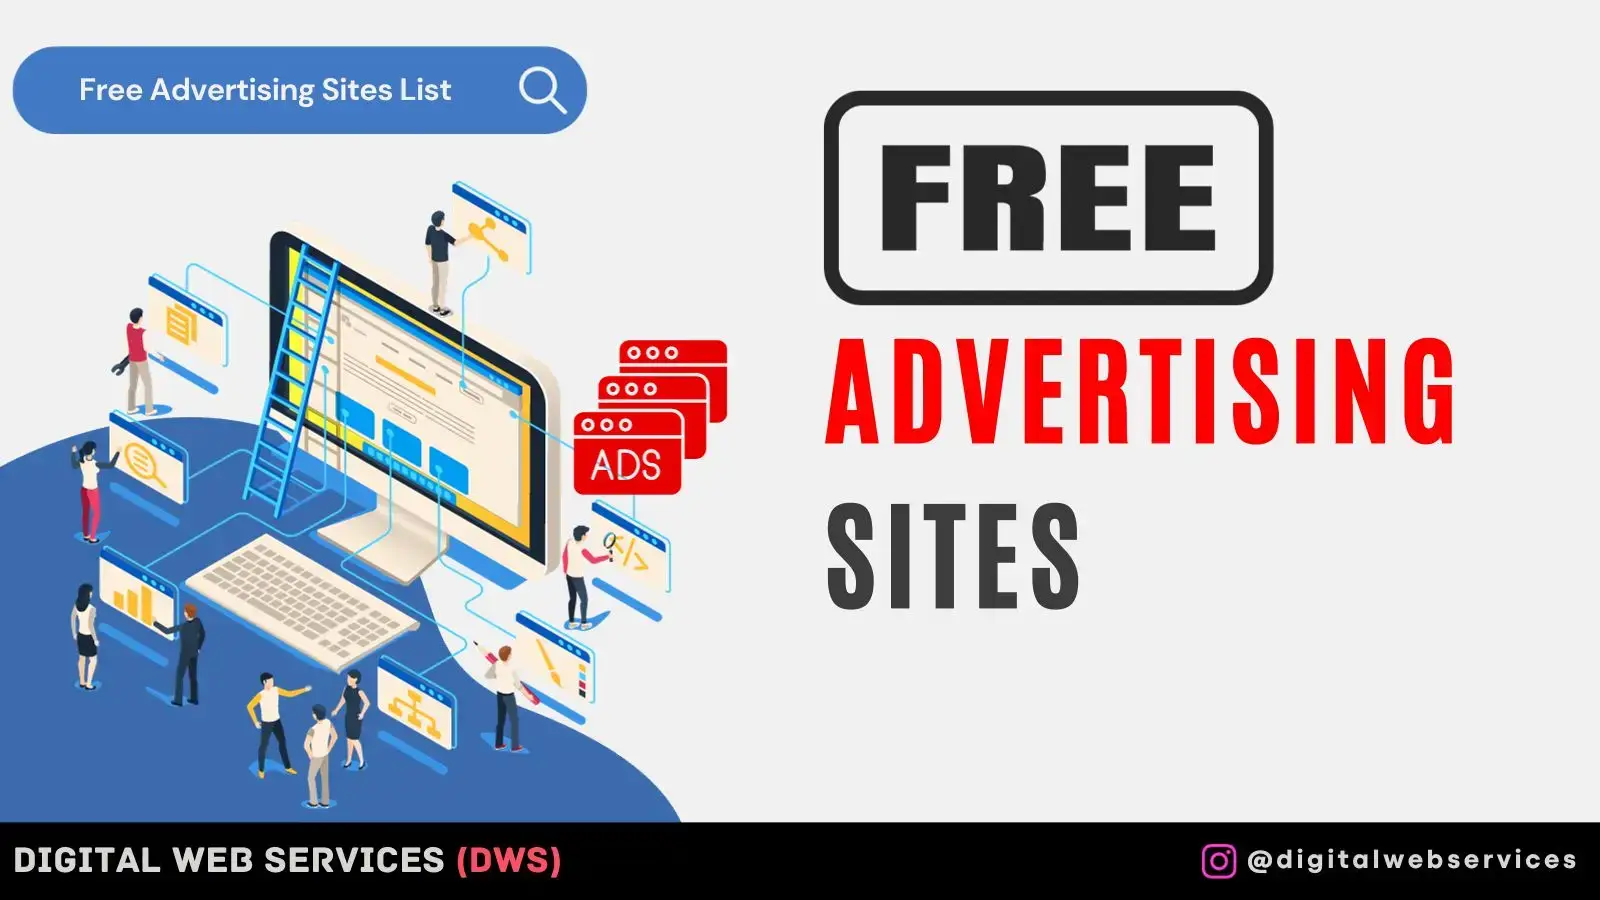 Free advertising sites